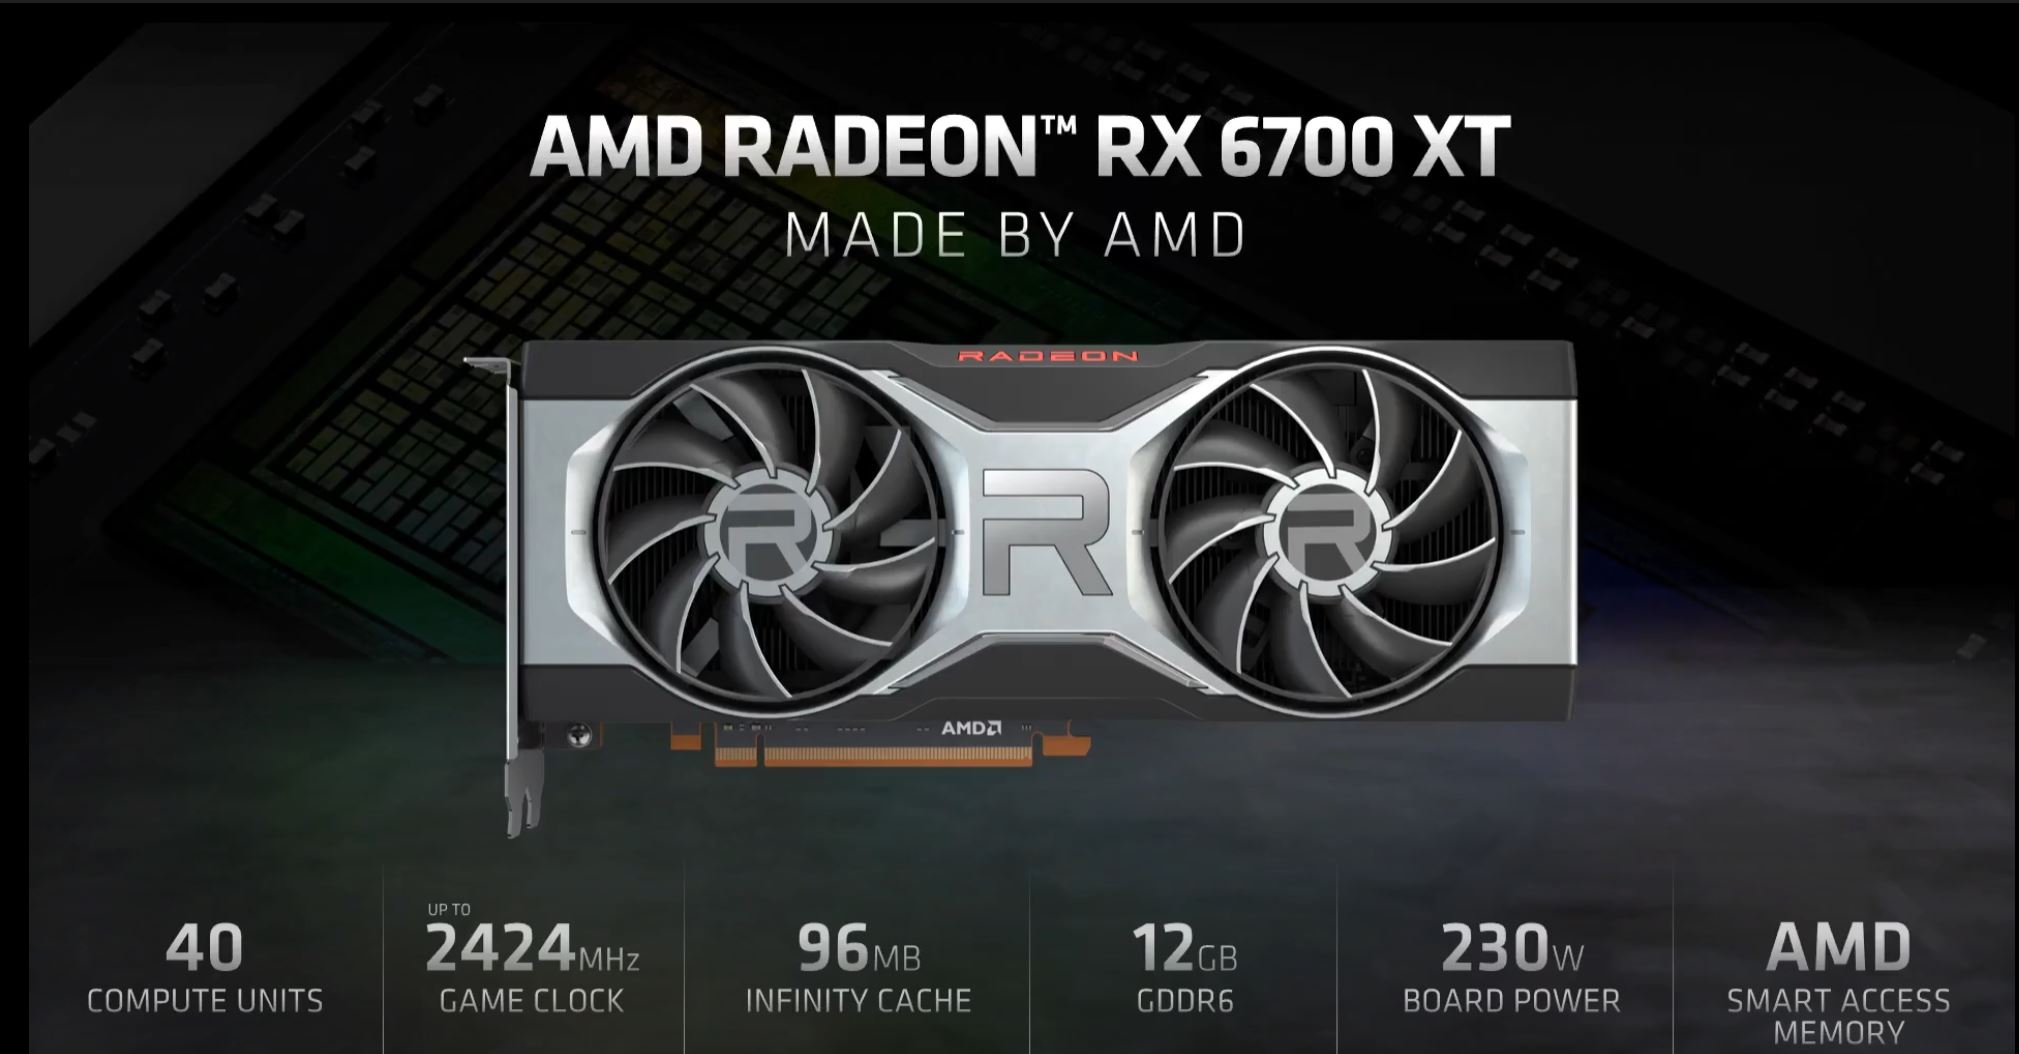 AMD Mengumumkan Kad Grafik Radeon RX 6700 XT Dengan Spesifikasi Gaming 1440p Dengan Kadar Segar Semula Tinggi